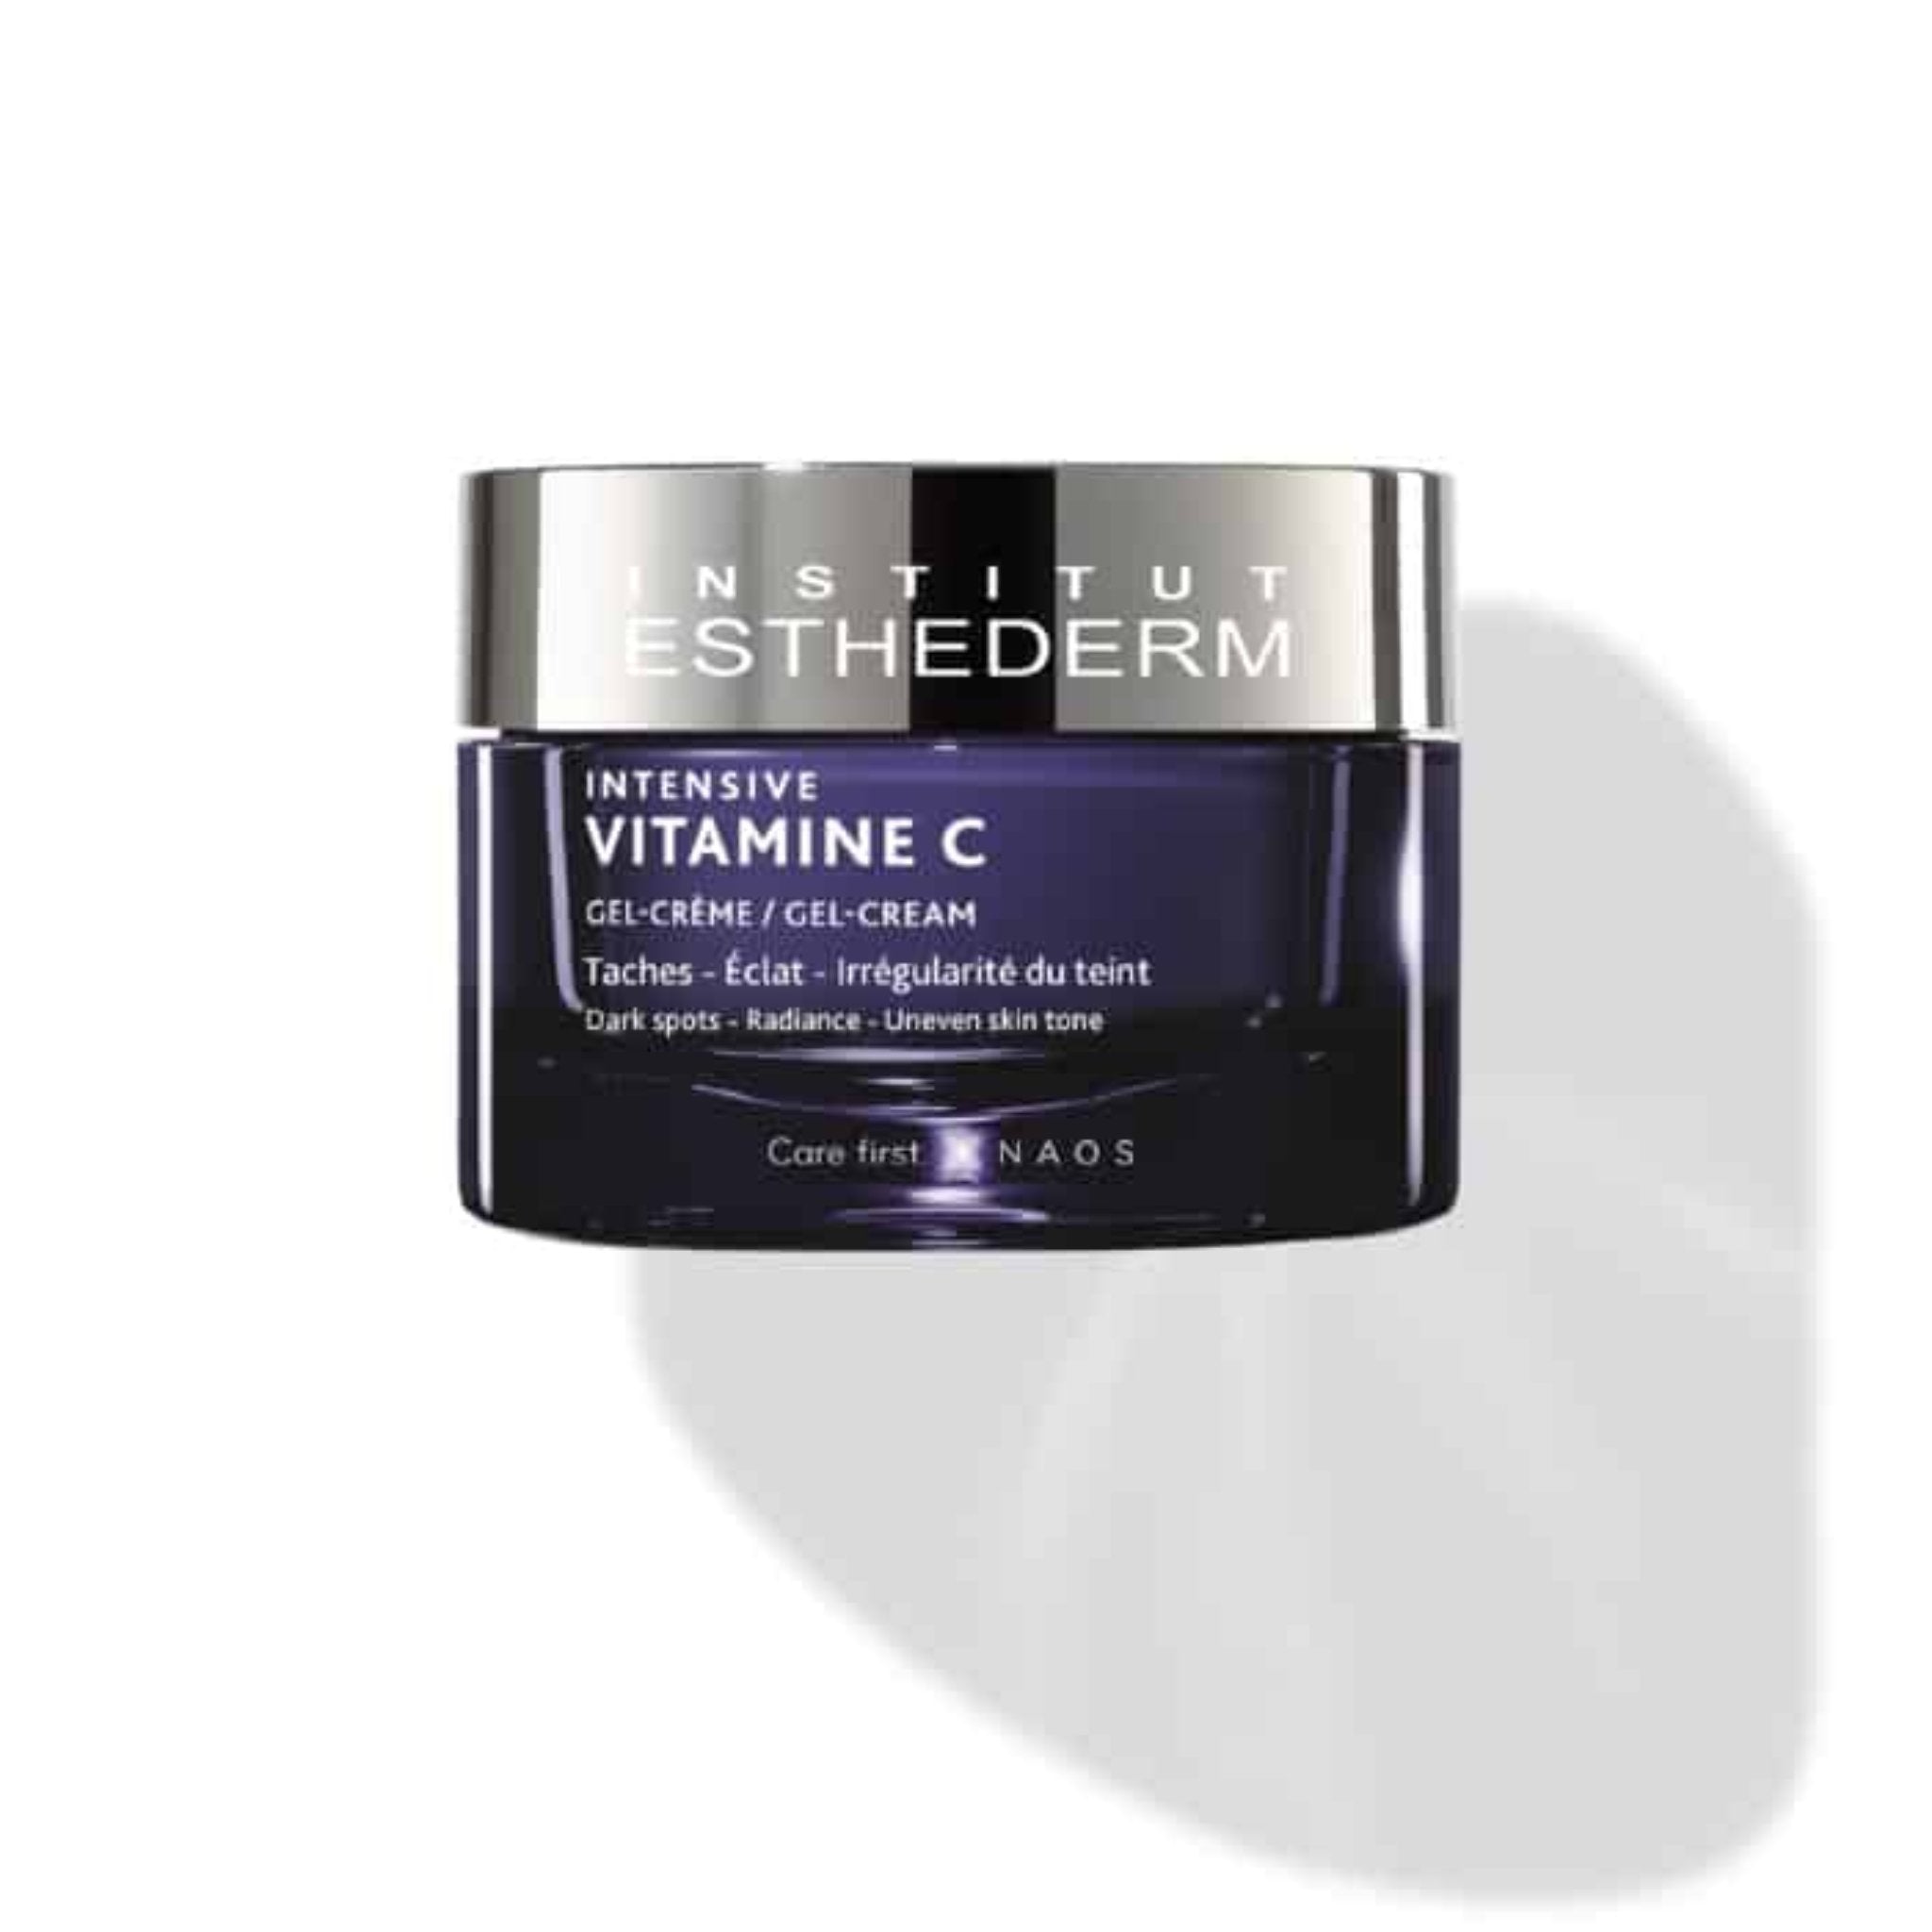 Esthederm. Intensive Vitamine C Gel-Crème - 50 ml - Concept C. Shop